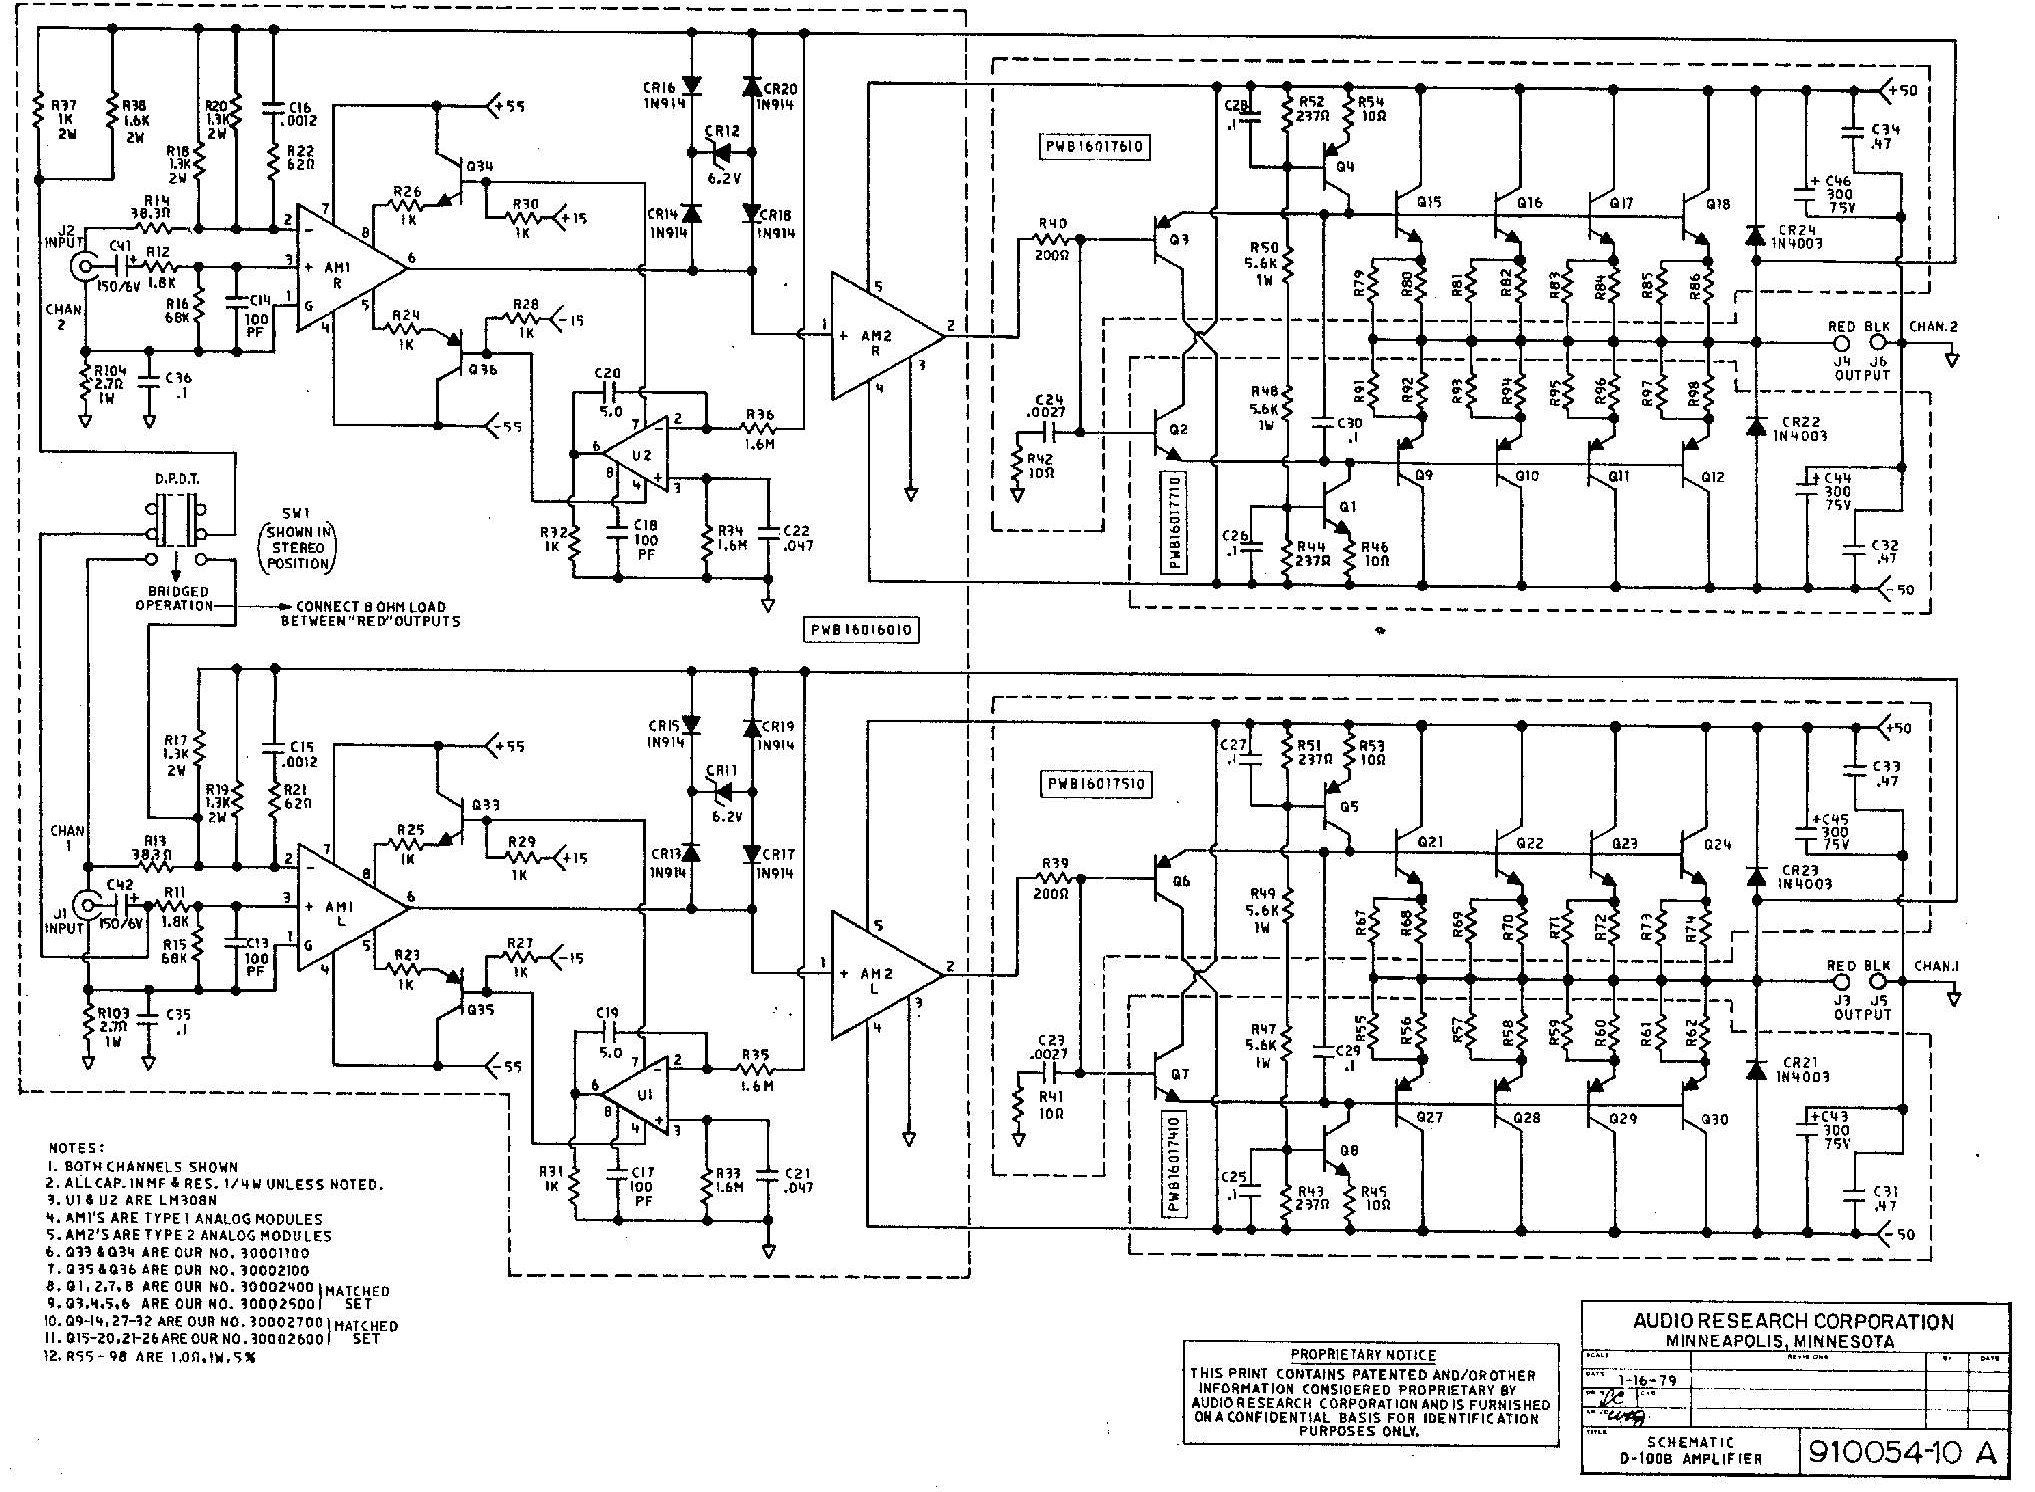 High Power Class D Amplifier Schematic - Circuit Diagram ...